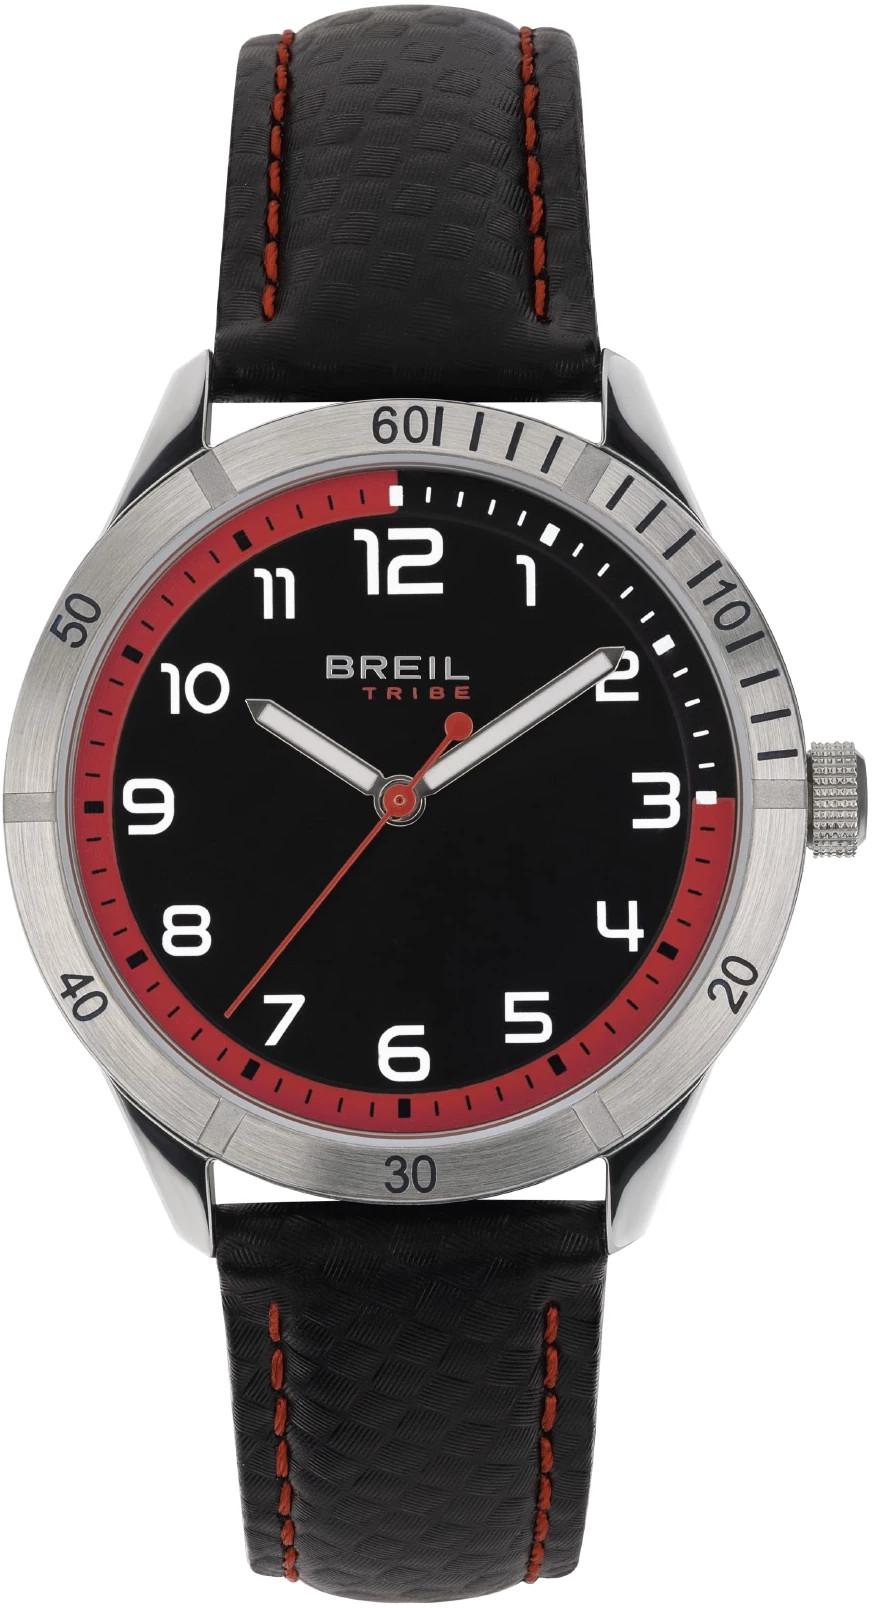 BREIL Dětské hodinky Tribe Mate EW0620